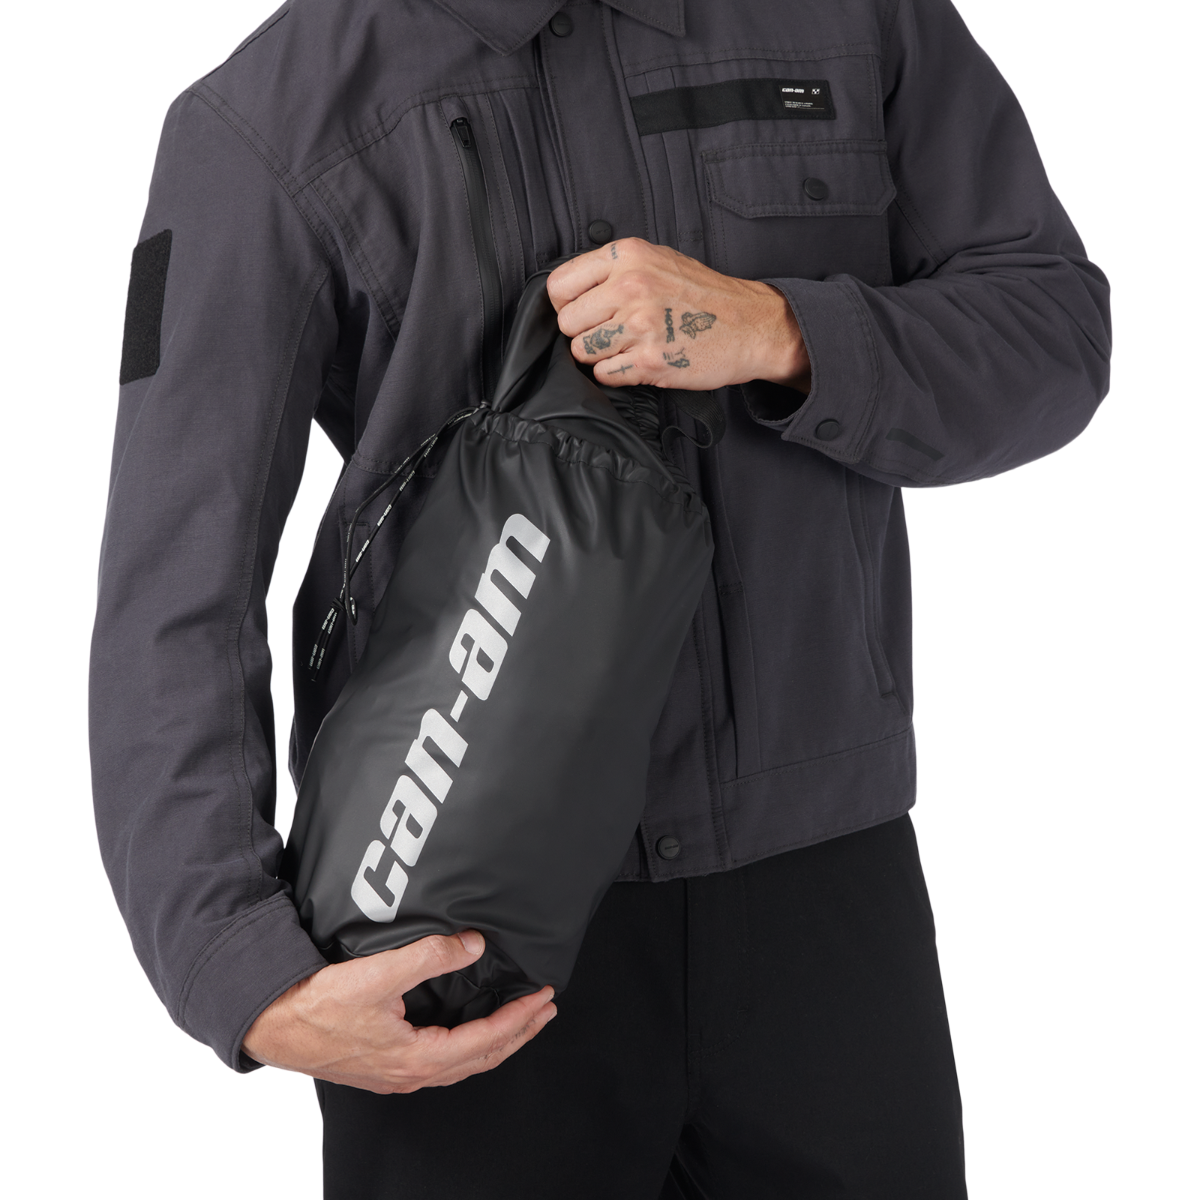 Can-Am Spyder Rain Suit Kit